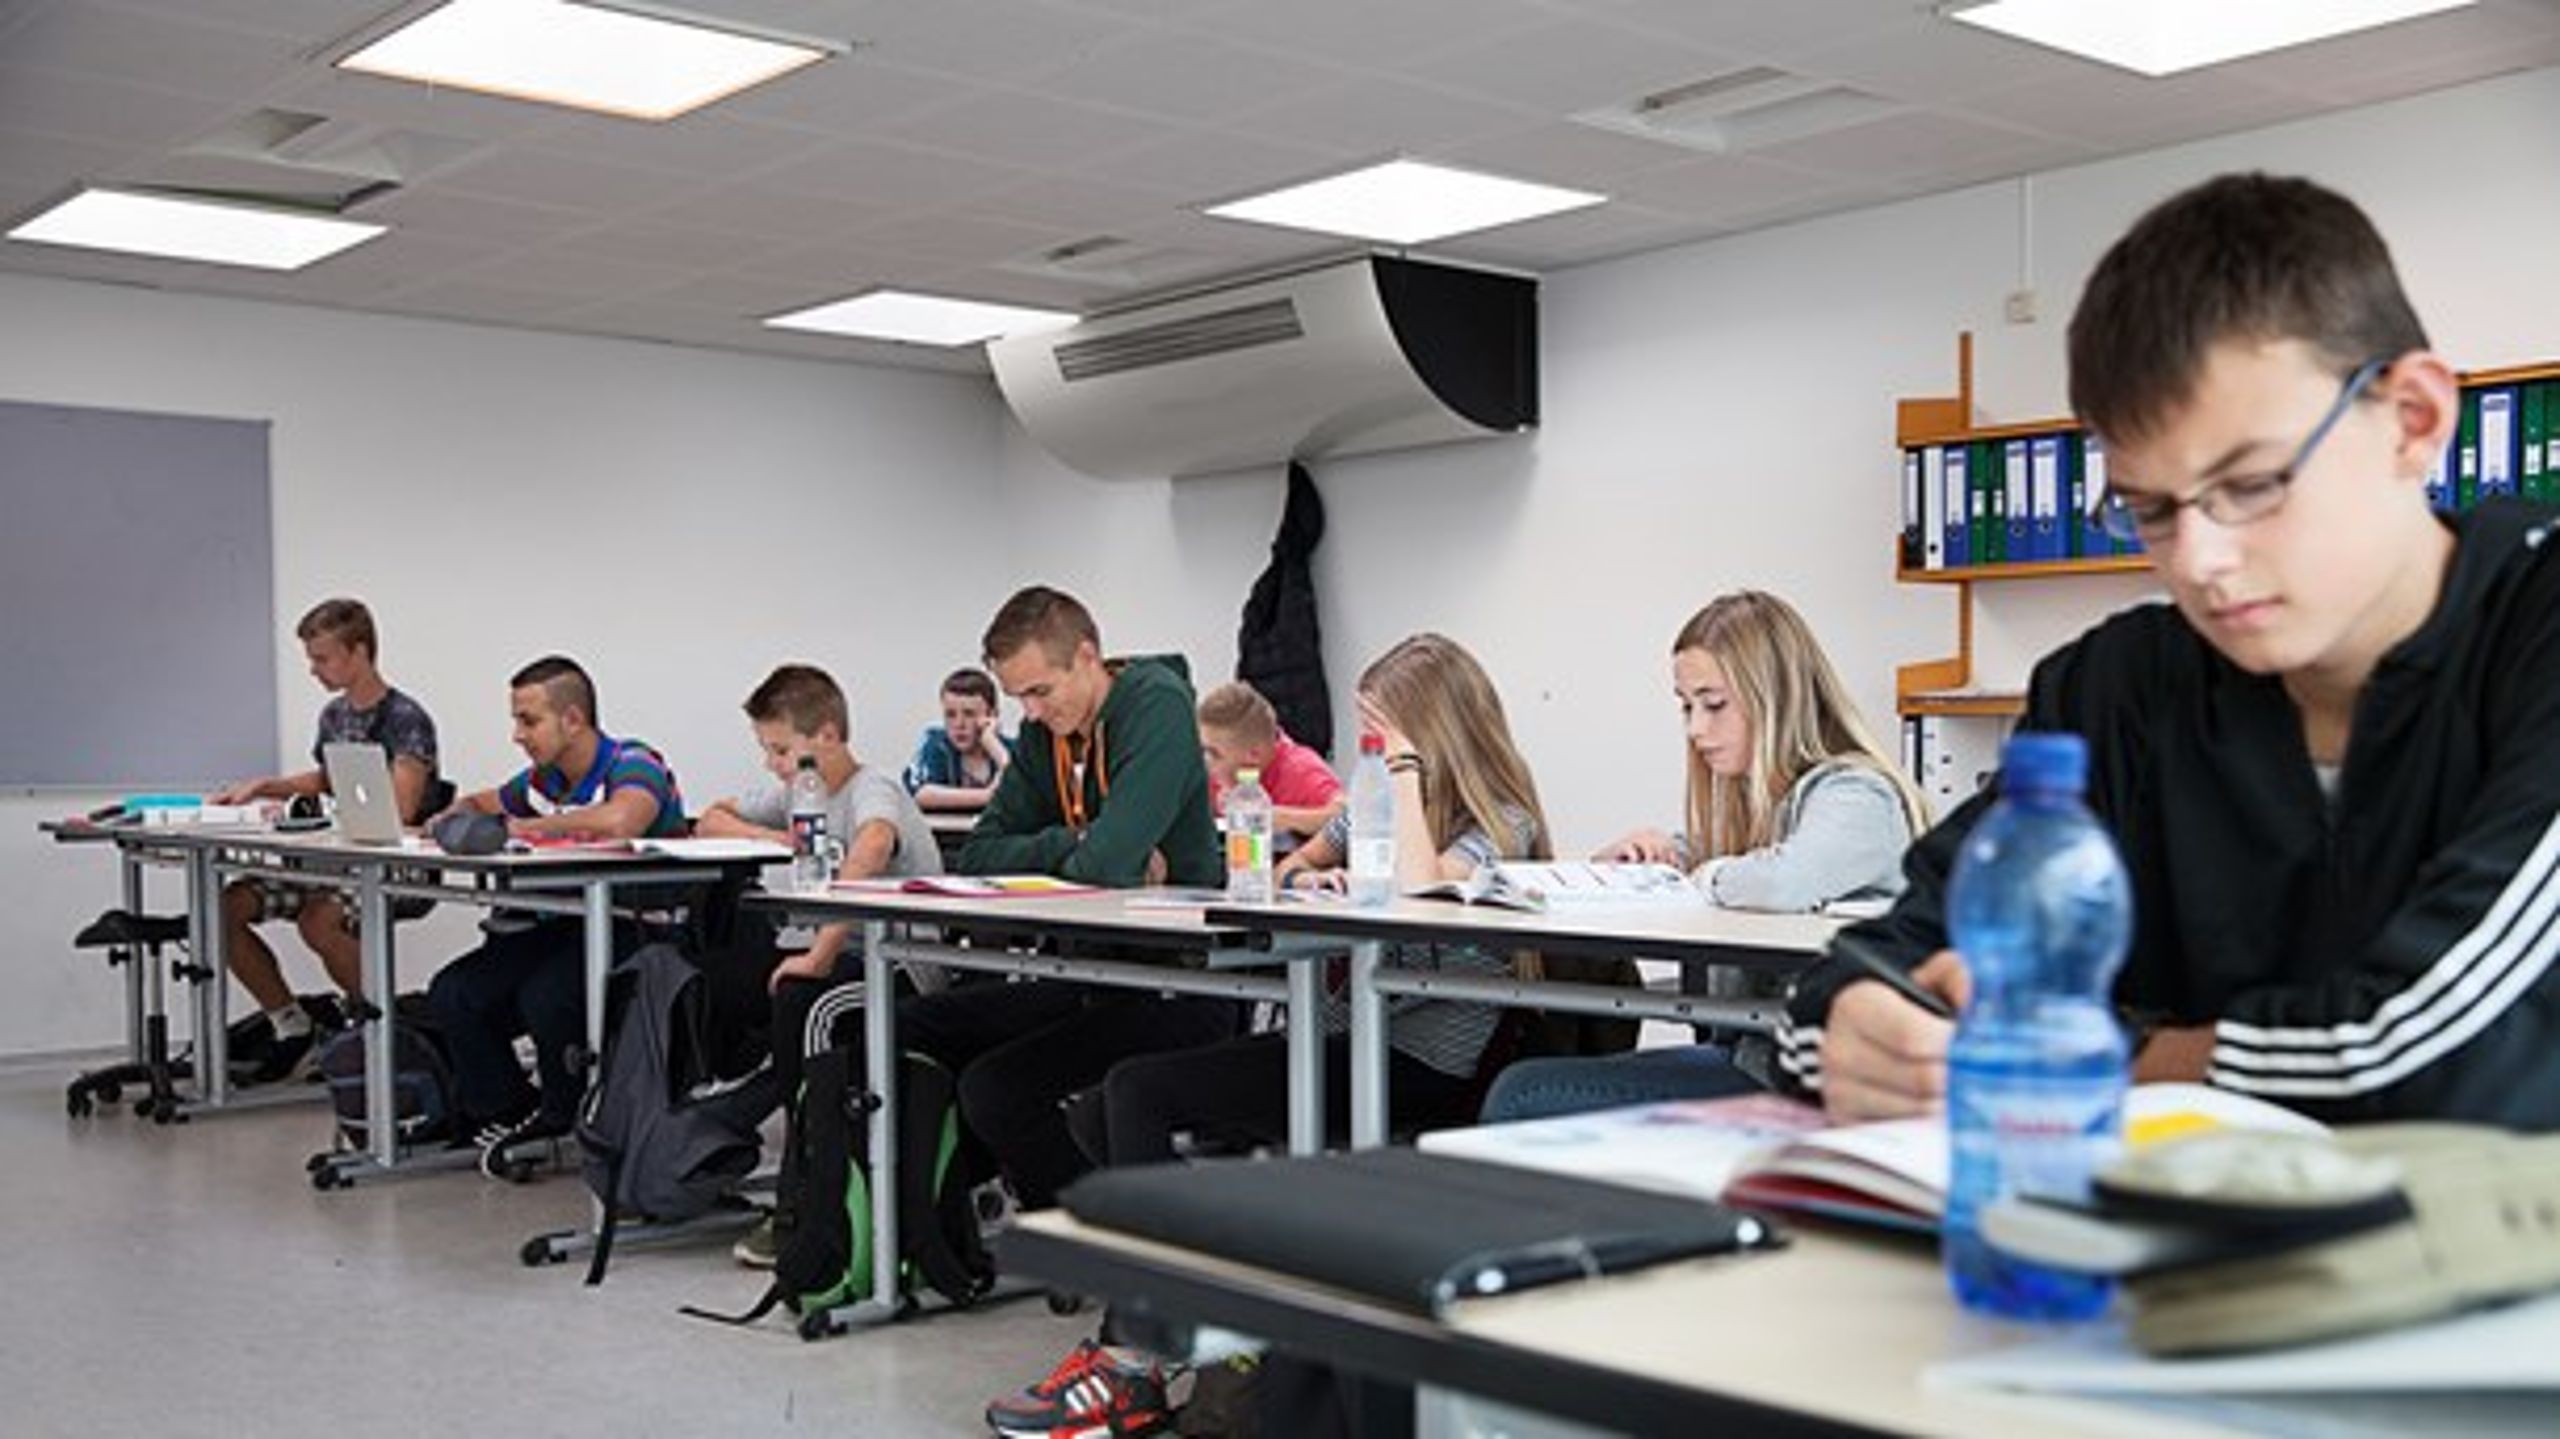 Engskovskolen i Holbæk er en af de folkeskoler, der har lokaler med dårligt indeklima. Det kommende energiforlig bør tage fat i energirenovering og indeklima, skriver&nbsp;Simon O. Rasmussen.